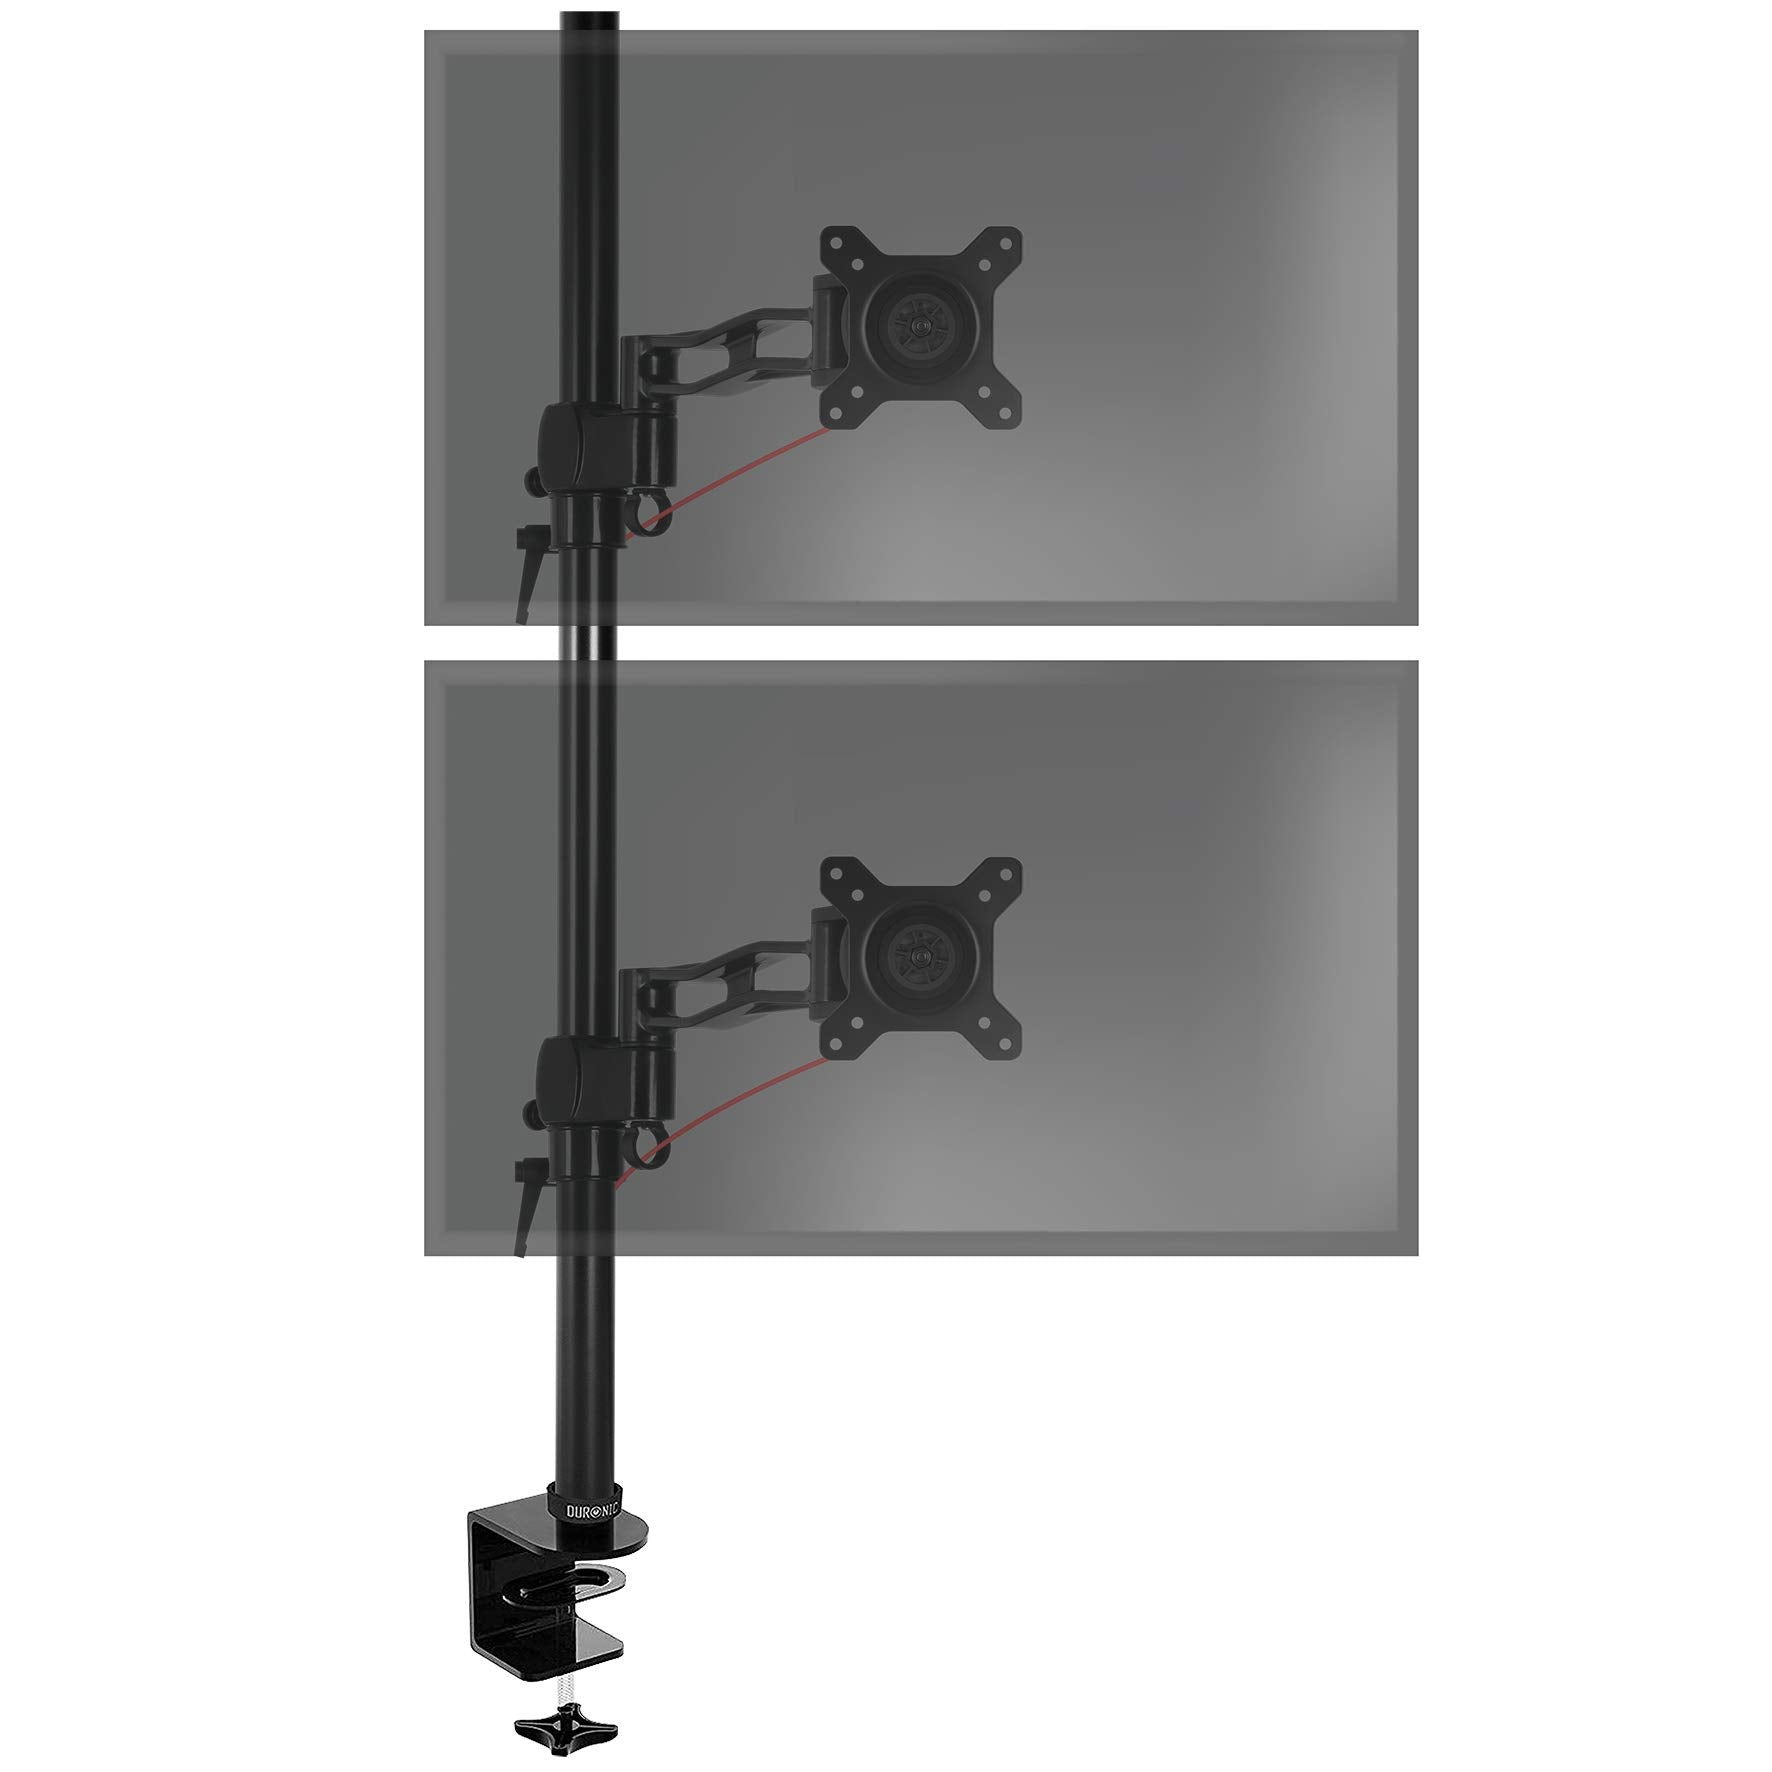 Duronic Dm35v2x2 Bk brazo para monitor 2 pantallas de 13 27 y 8 kg cada altura ajustable 80cm soporte giratorio inclinable capacidad 8kg 18cm 8kg80